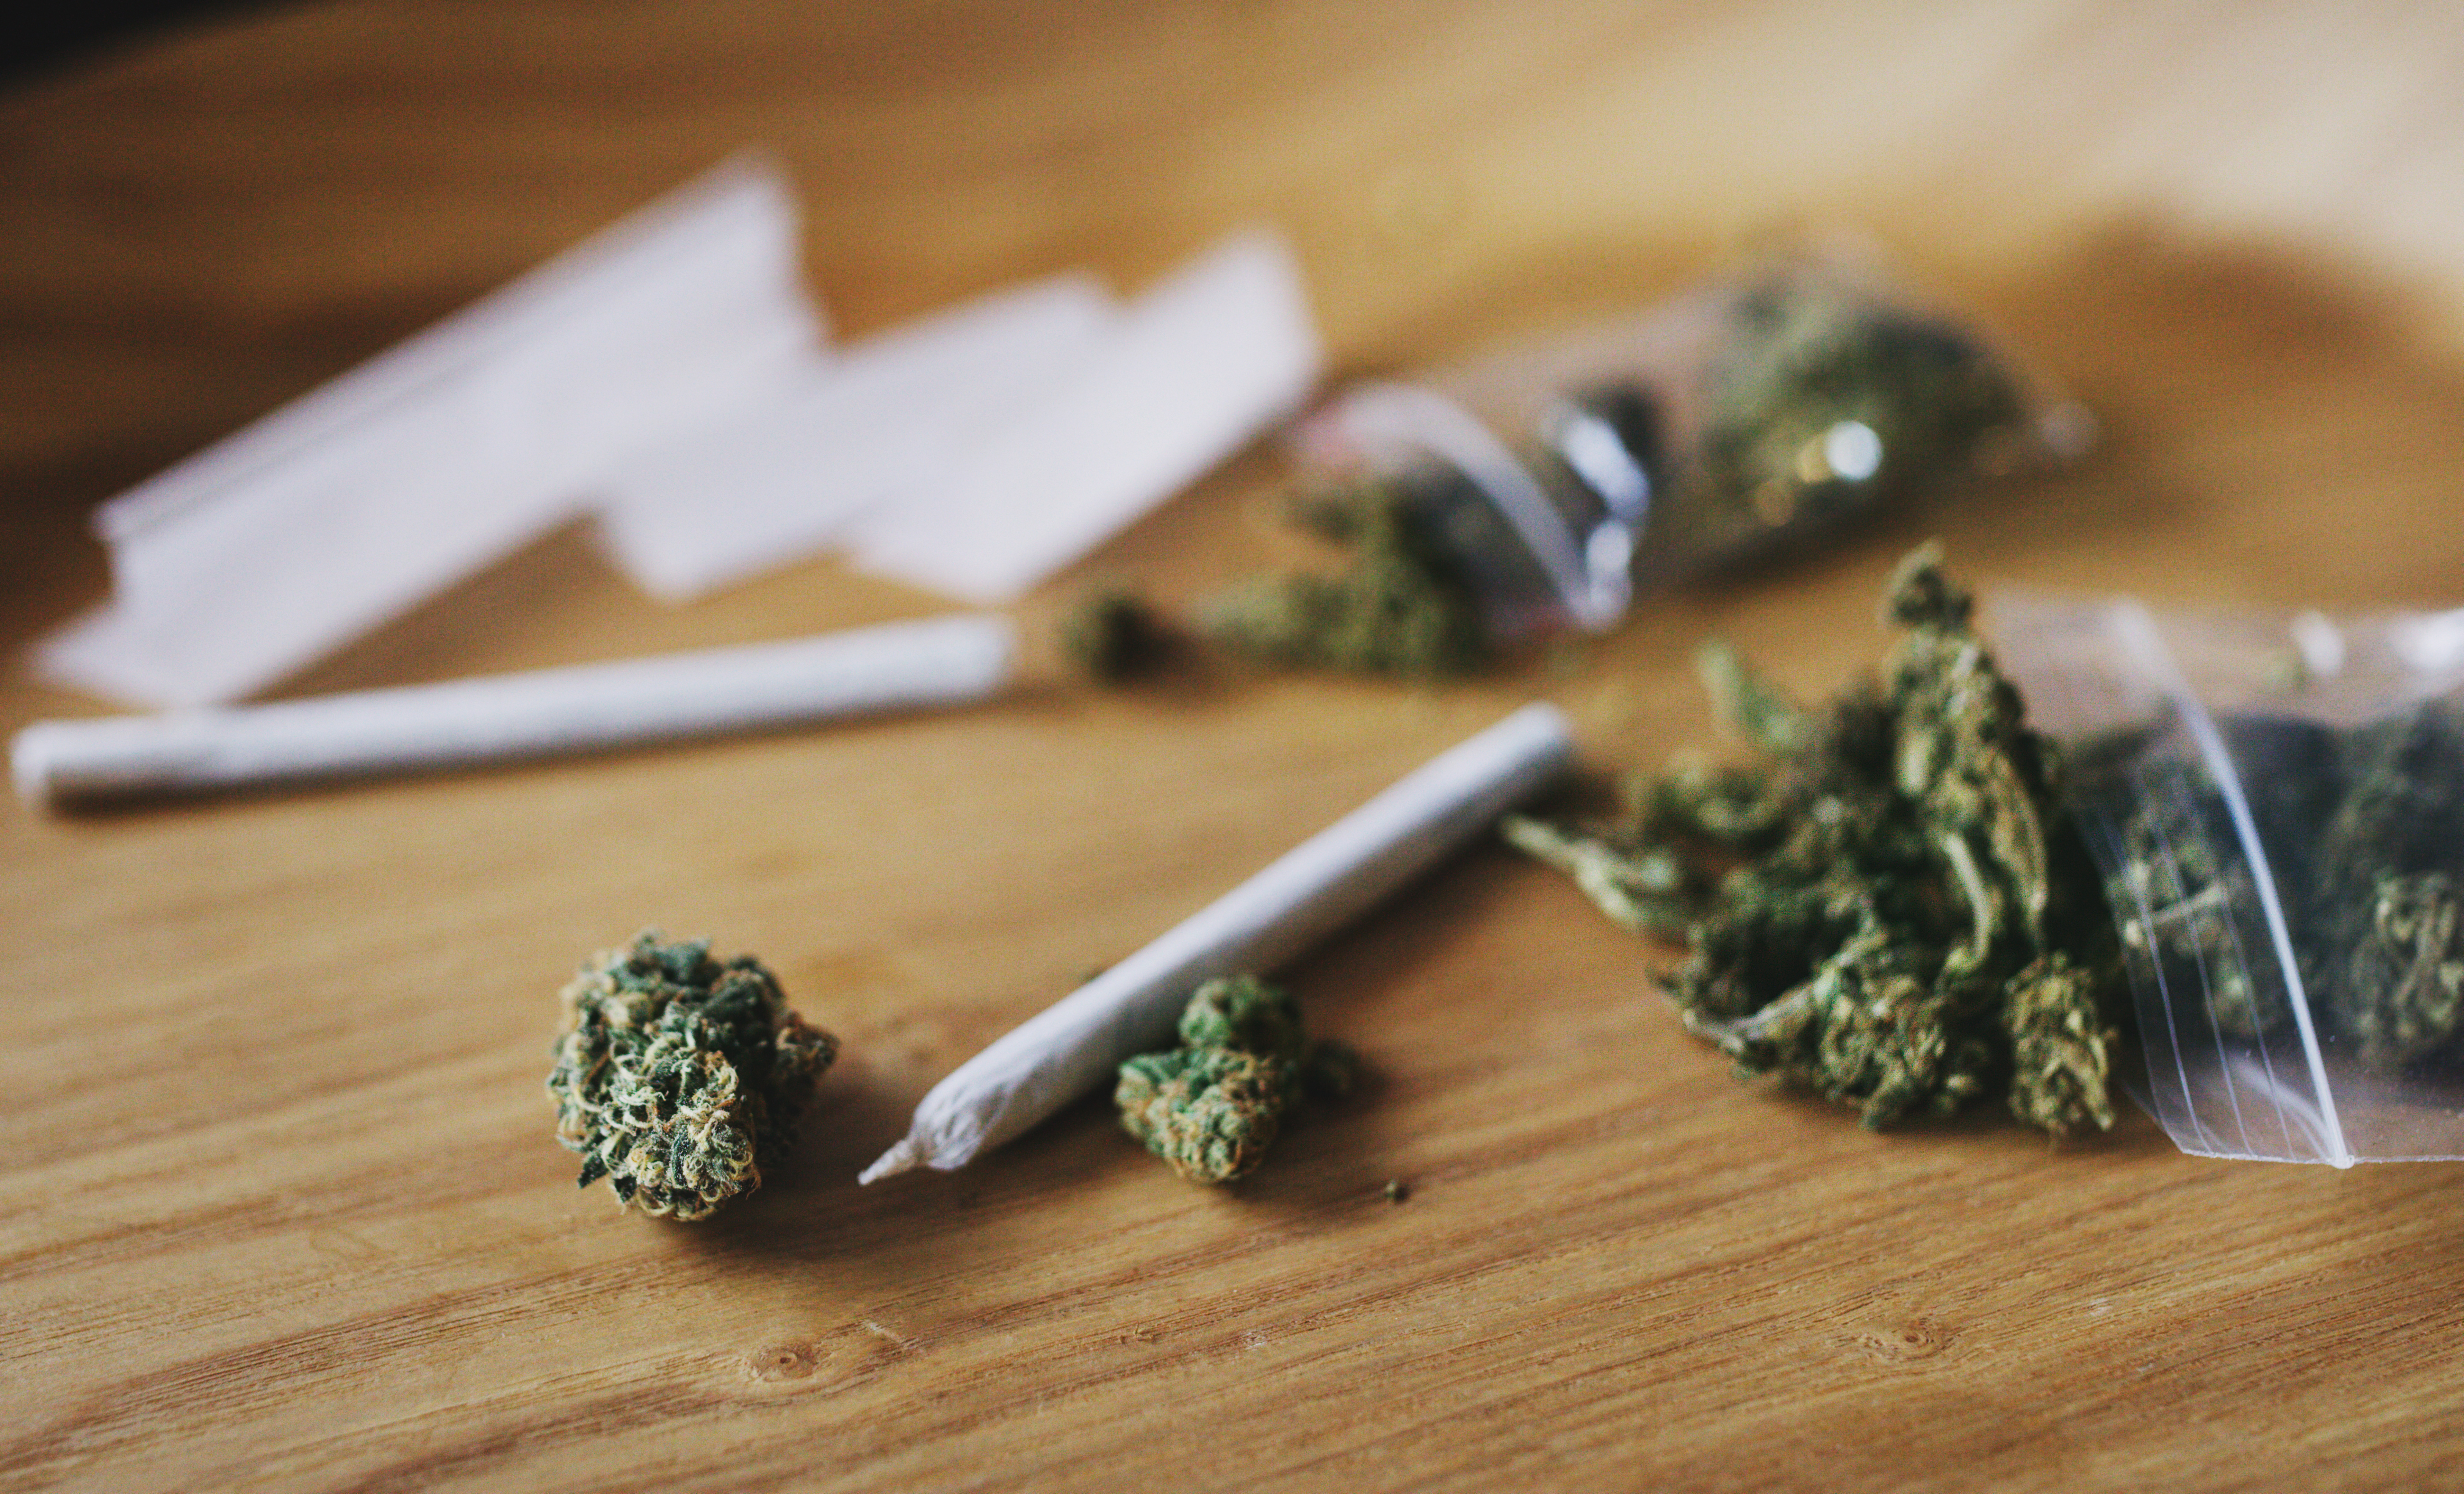 "Este estudio se suma a nuestra creciente comprensión de que el consumo de cannabis no es inofensivo y que los riesgos no se fijan en un momento dado", dijo uno de los expertos